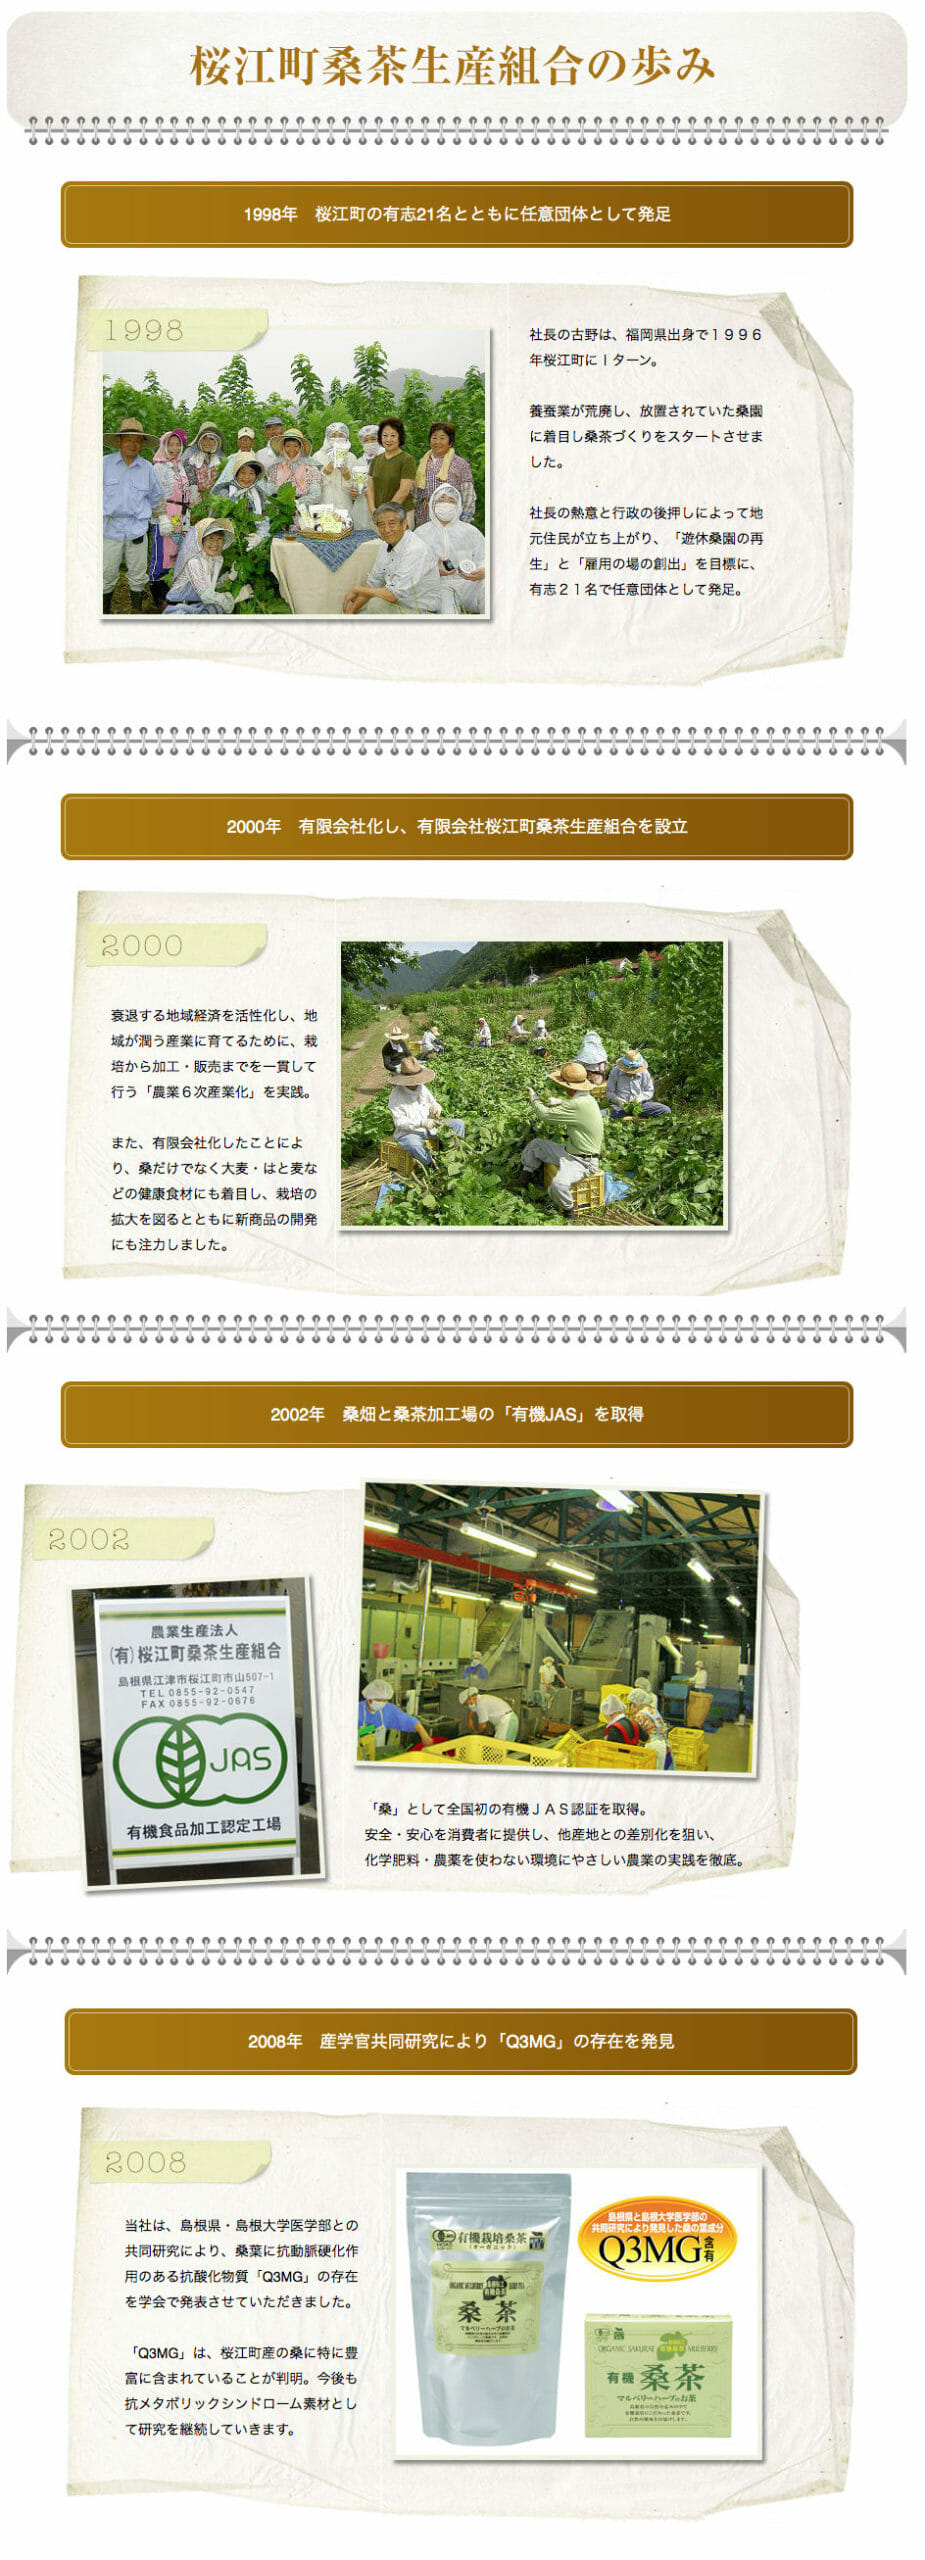 桜江町桑茶生産組合の歴史